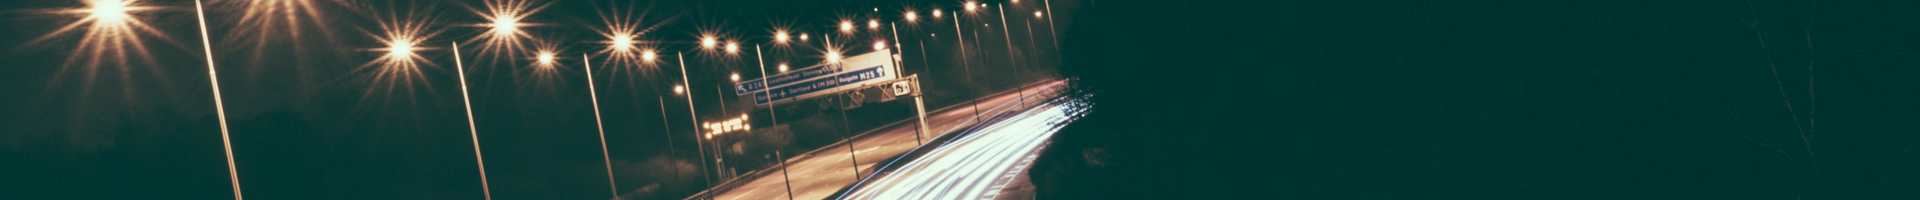 Заголовочное изображение страницы ШУНО - Вид на встречный поток освещённой восьмиполосной автомагистрали